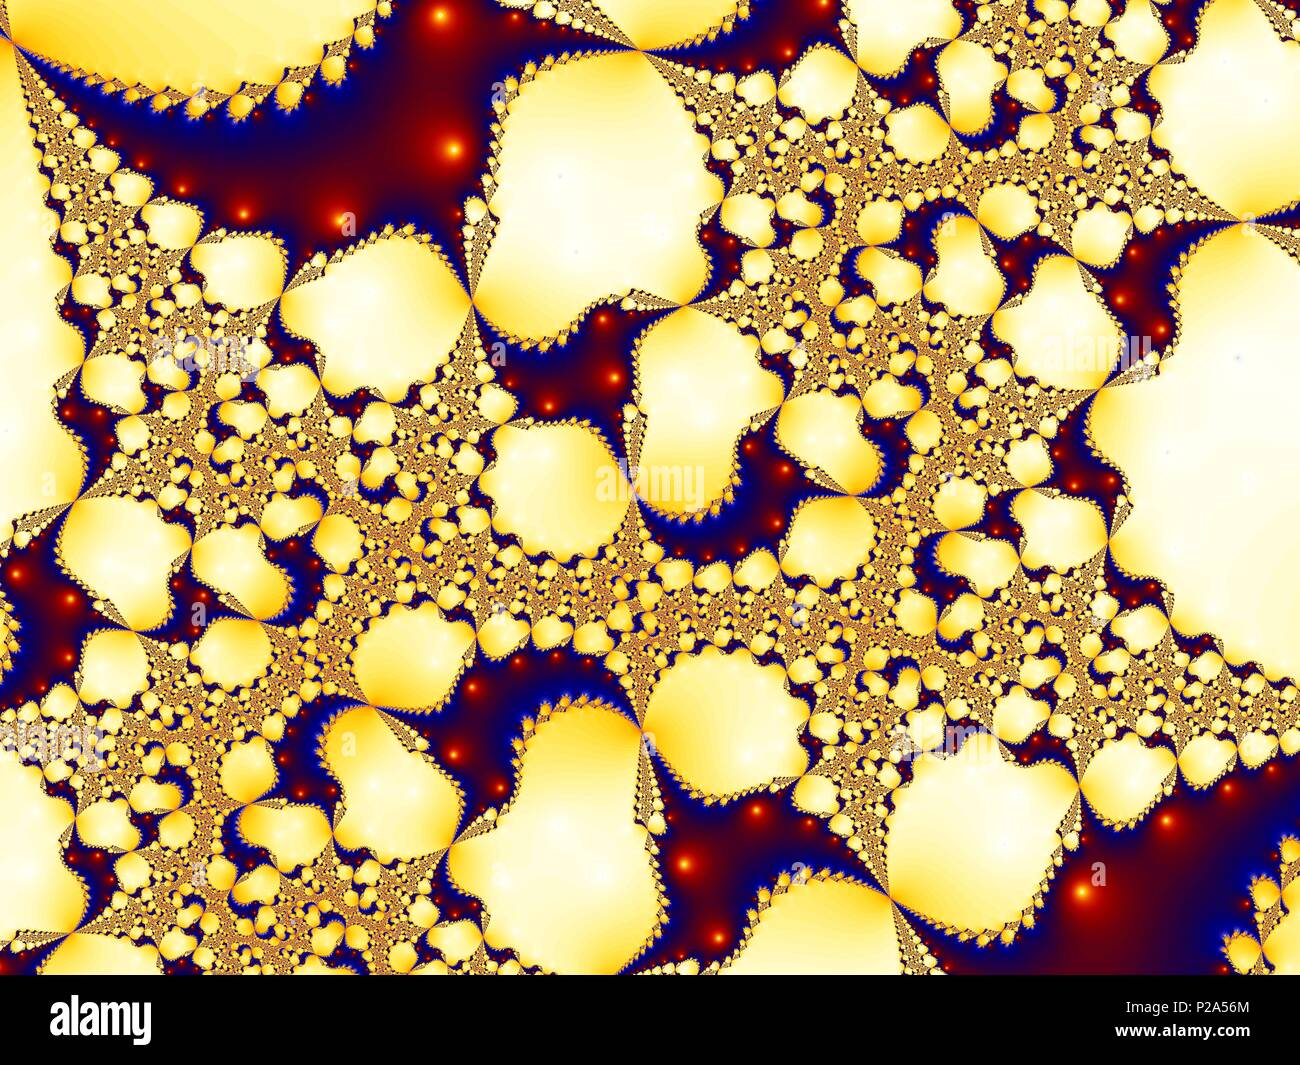 Image générée par ordinateur - structure fractale mathématique - motif coloré Banque D'Images